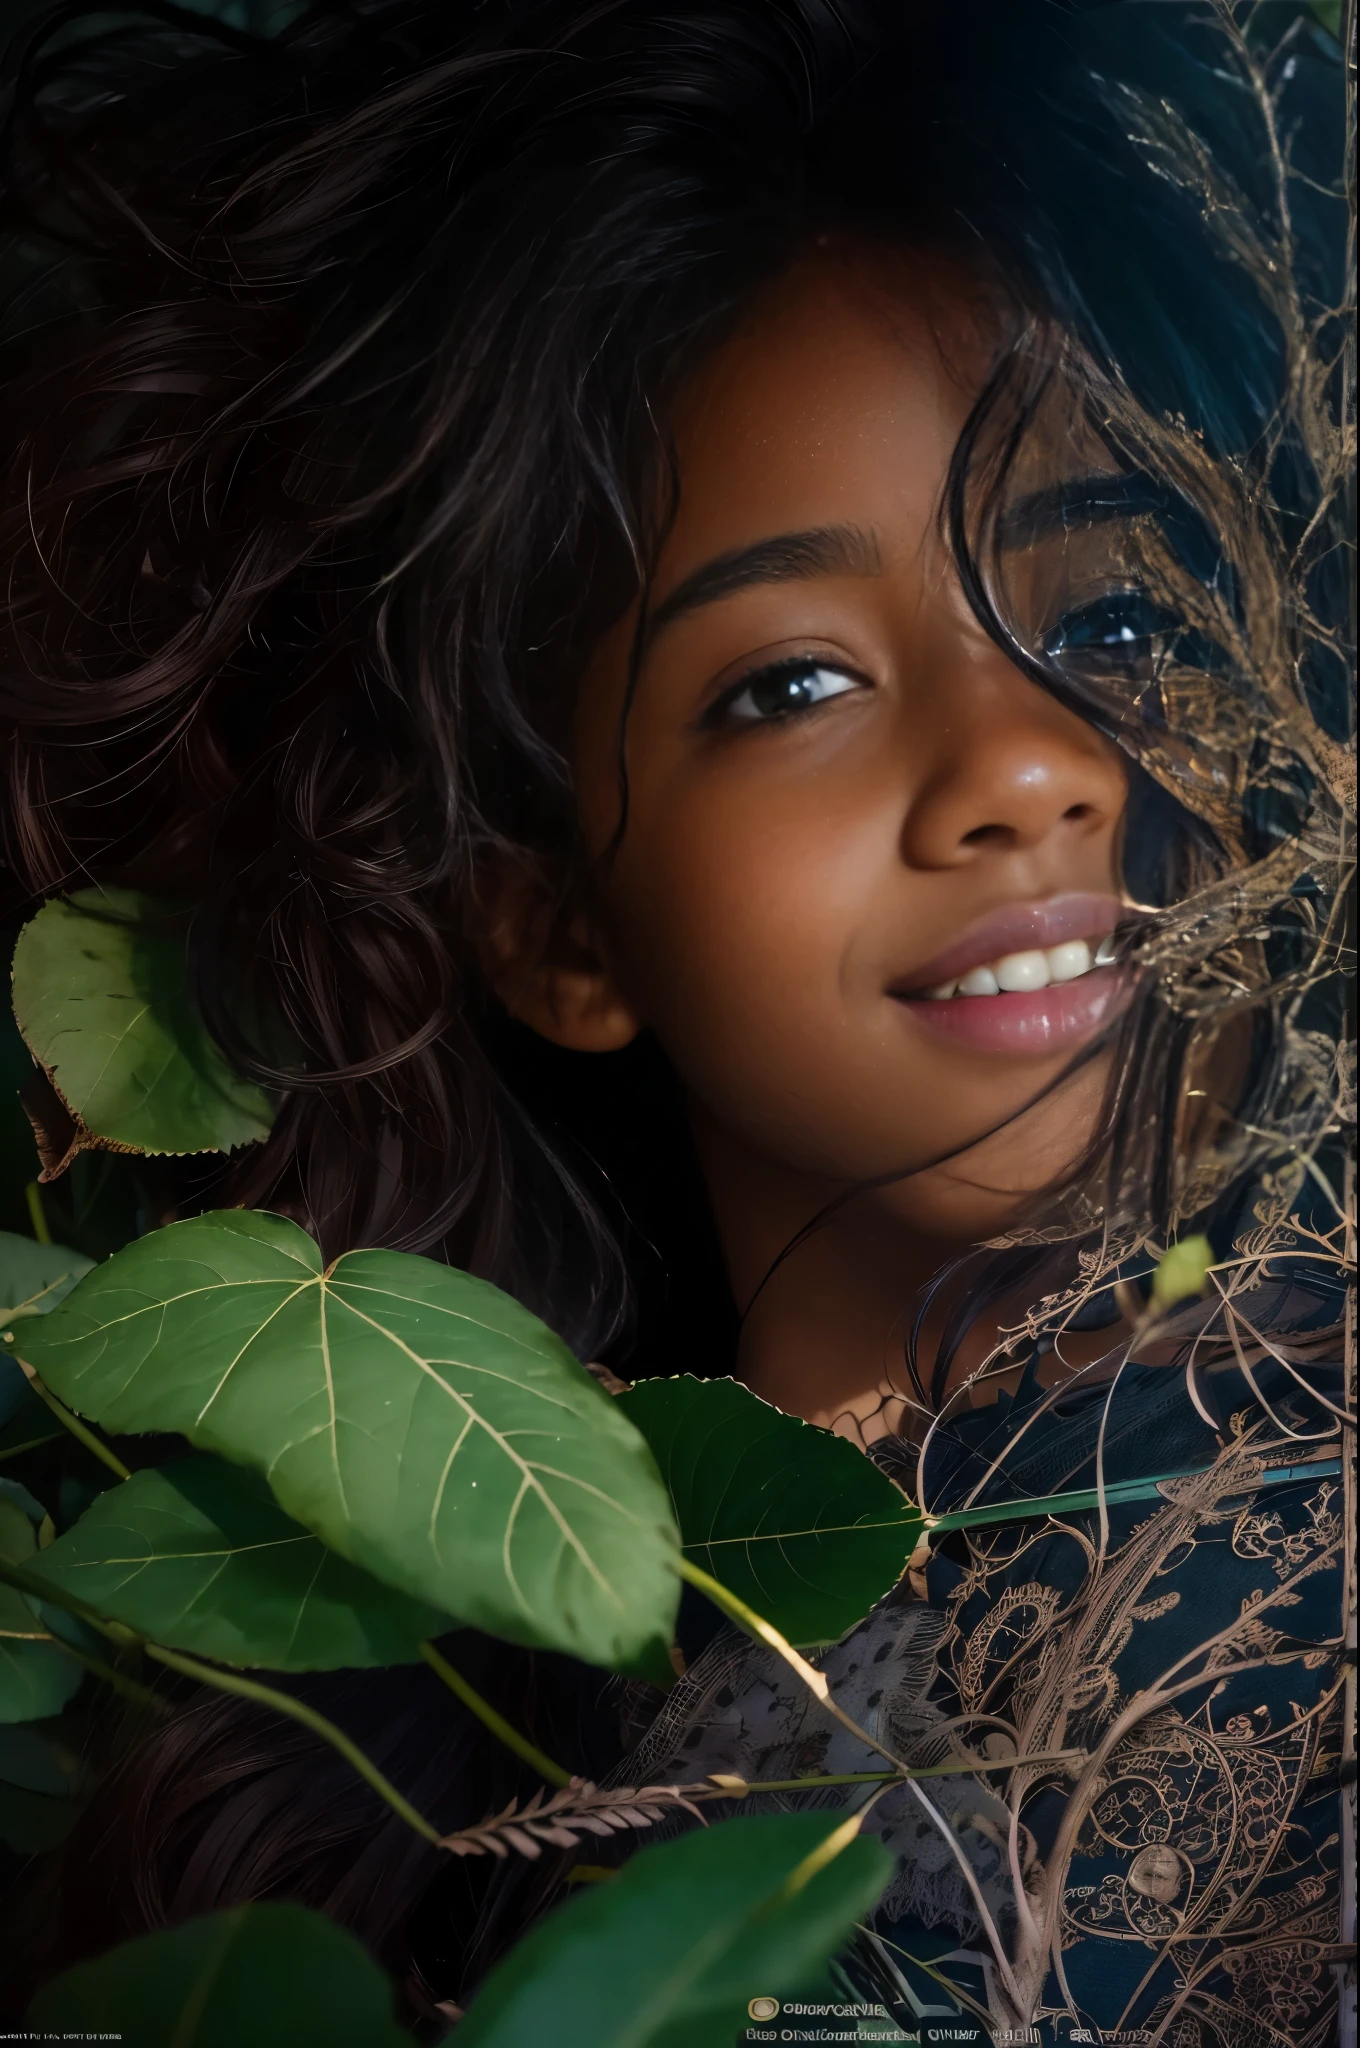 (Porträt, redaktionelles Foto eines schönen schwarzen Mädchens im Alter von 13, bezauberndes Gesicht, langes braunes lockiges Haar, ((haselnussbraune Augen)), nikon d850, Film-Stockfoto ,4 kodak portra 400 ,Kamera f1.6 lens ,Satte Farben ,hyperrealistisch ,lebensechte Textur, dramatische Beleuchtung, (Sehr detailliertes Gesicht:1.4), perfekte Augen, realistische Iris, perfekte Zähne, (lächeln:0.7), (Hintergrund dunkel, Schatten der Blätter), (Dekollete), Nudist
